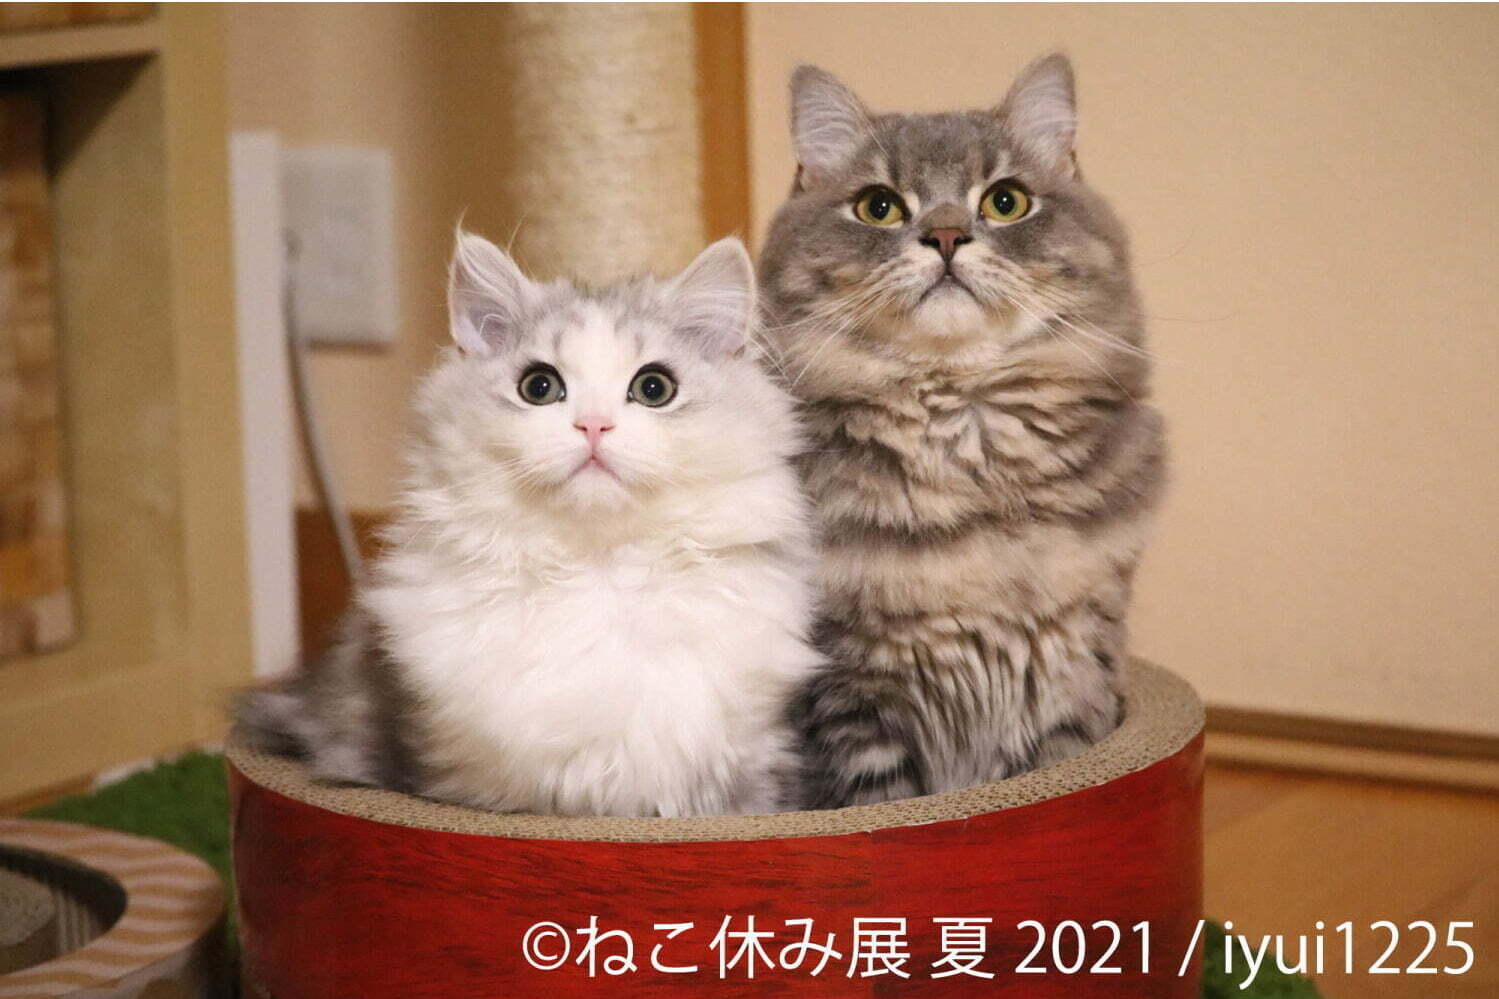 ネコや星座 の9 Kyuu人気石鹸が上野マルイに 数秘で選ぶ占いソープ 限定パンダも ファッションプレス